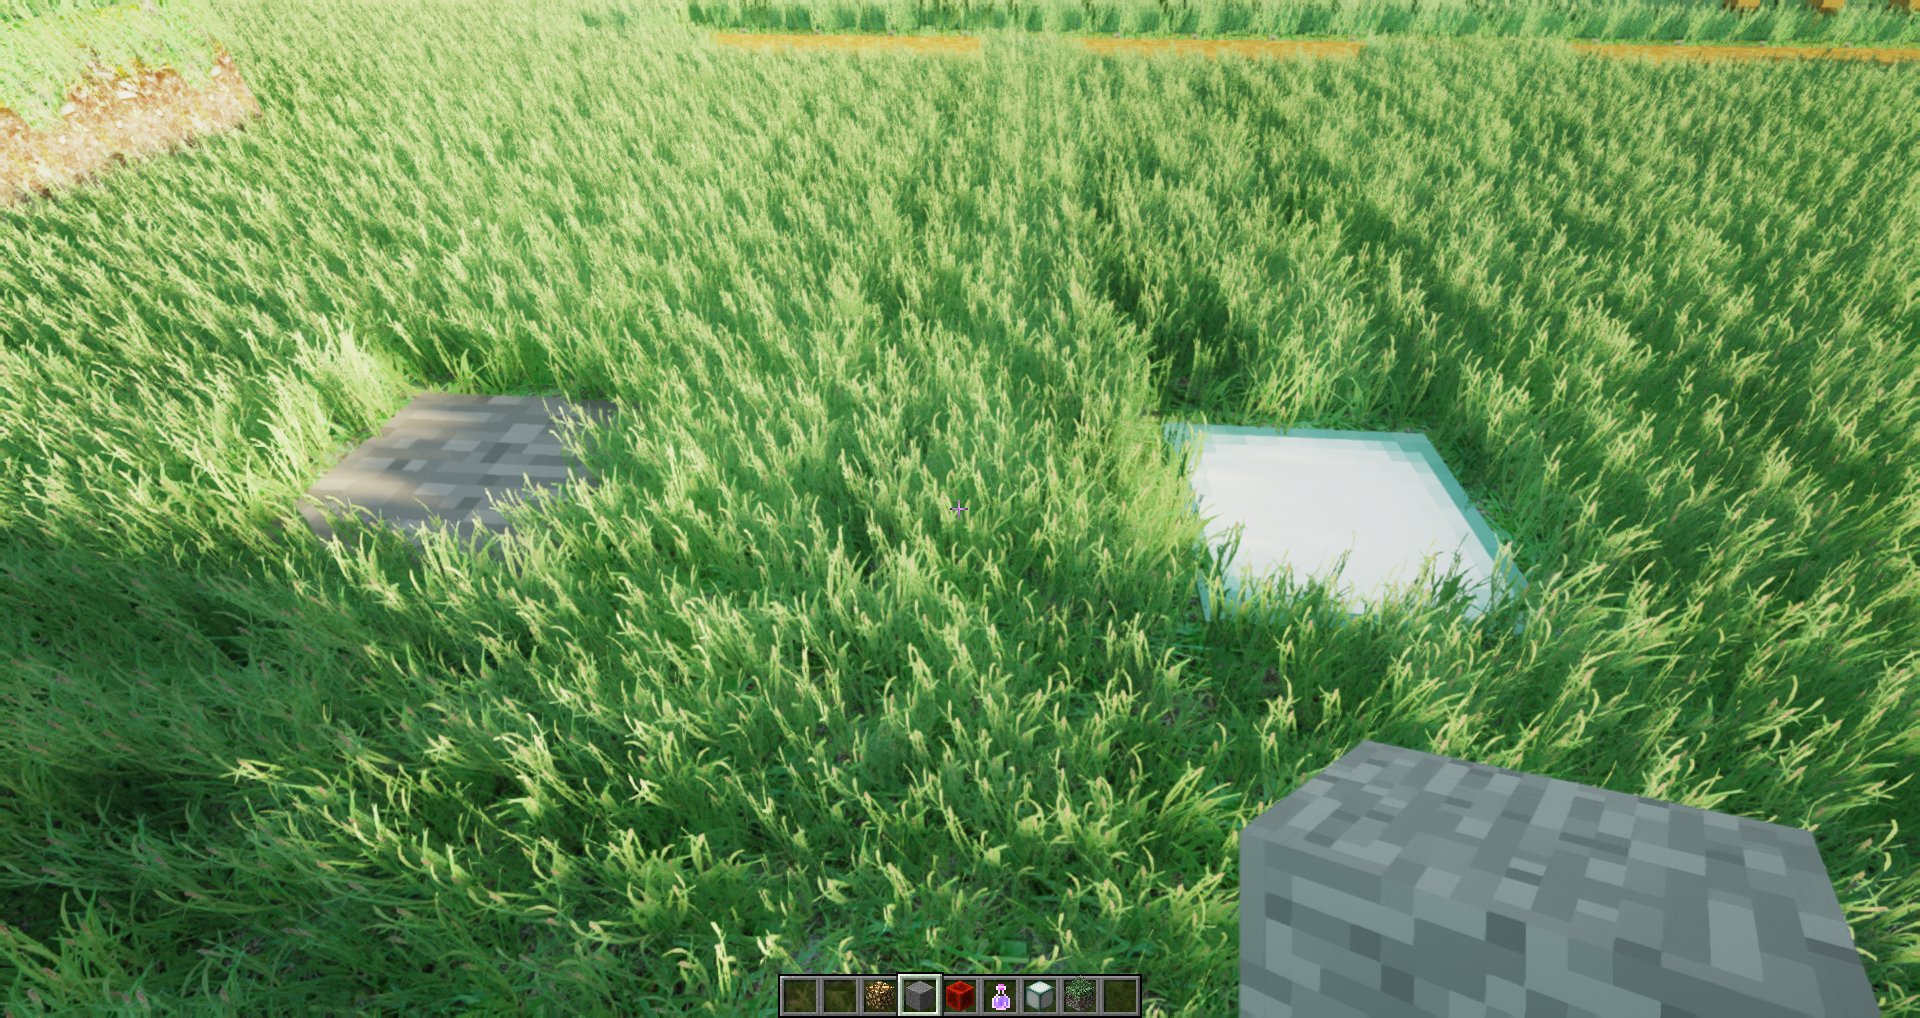 Un jugador hizo un mod con hierba hiperrealista para Minecraft